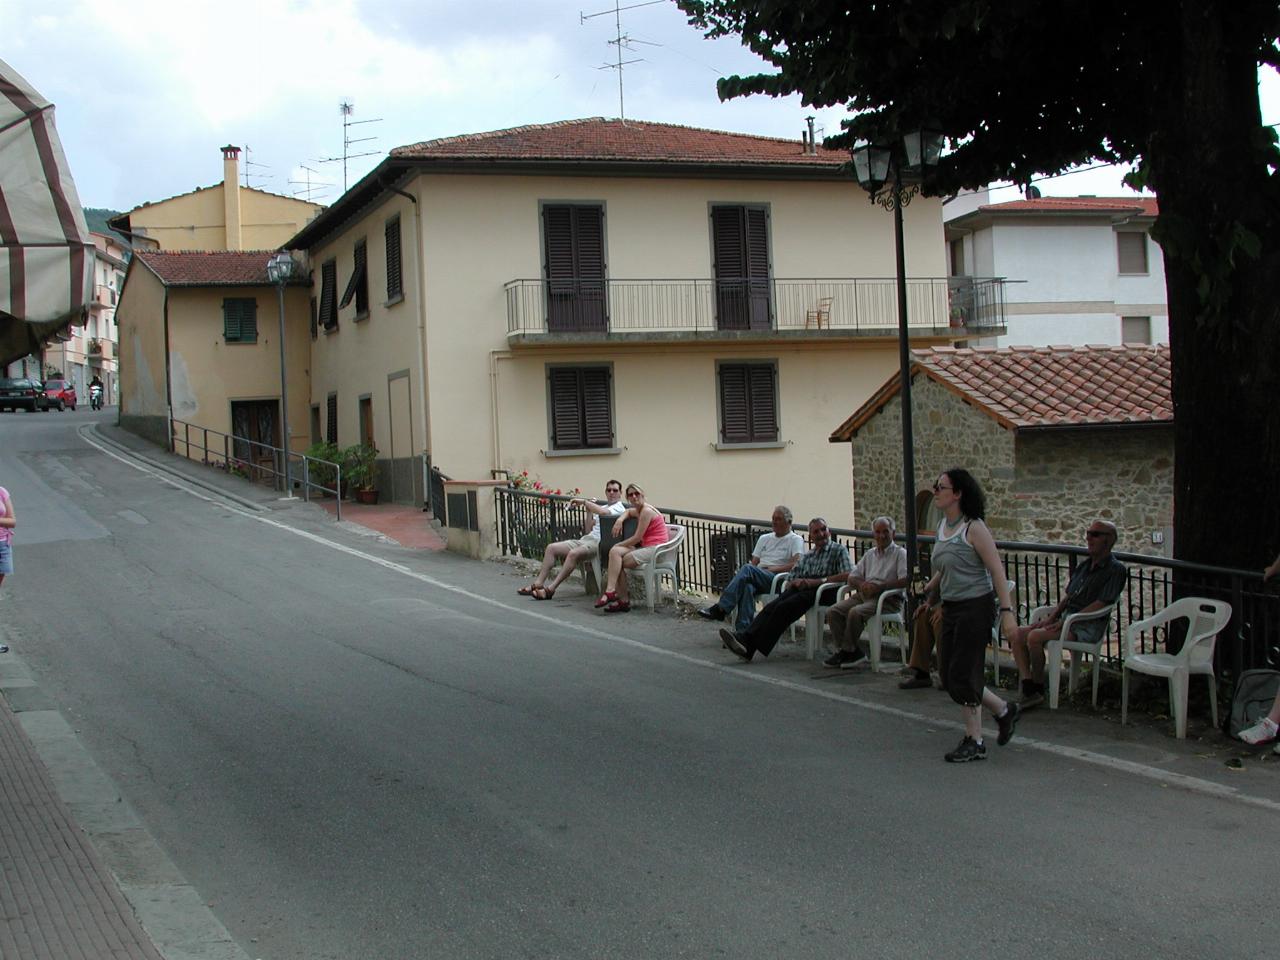 Main street of Santa Brigida,  with locals 